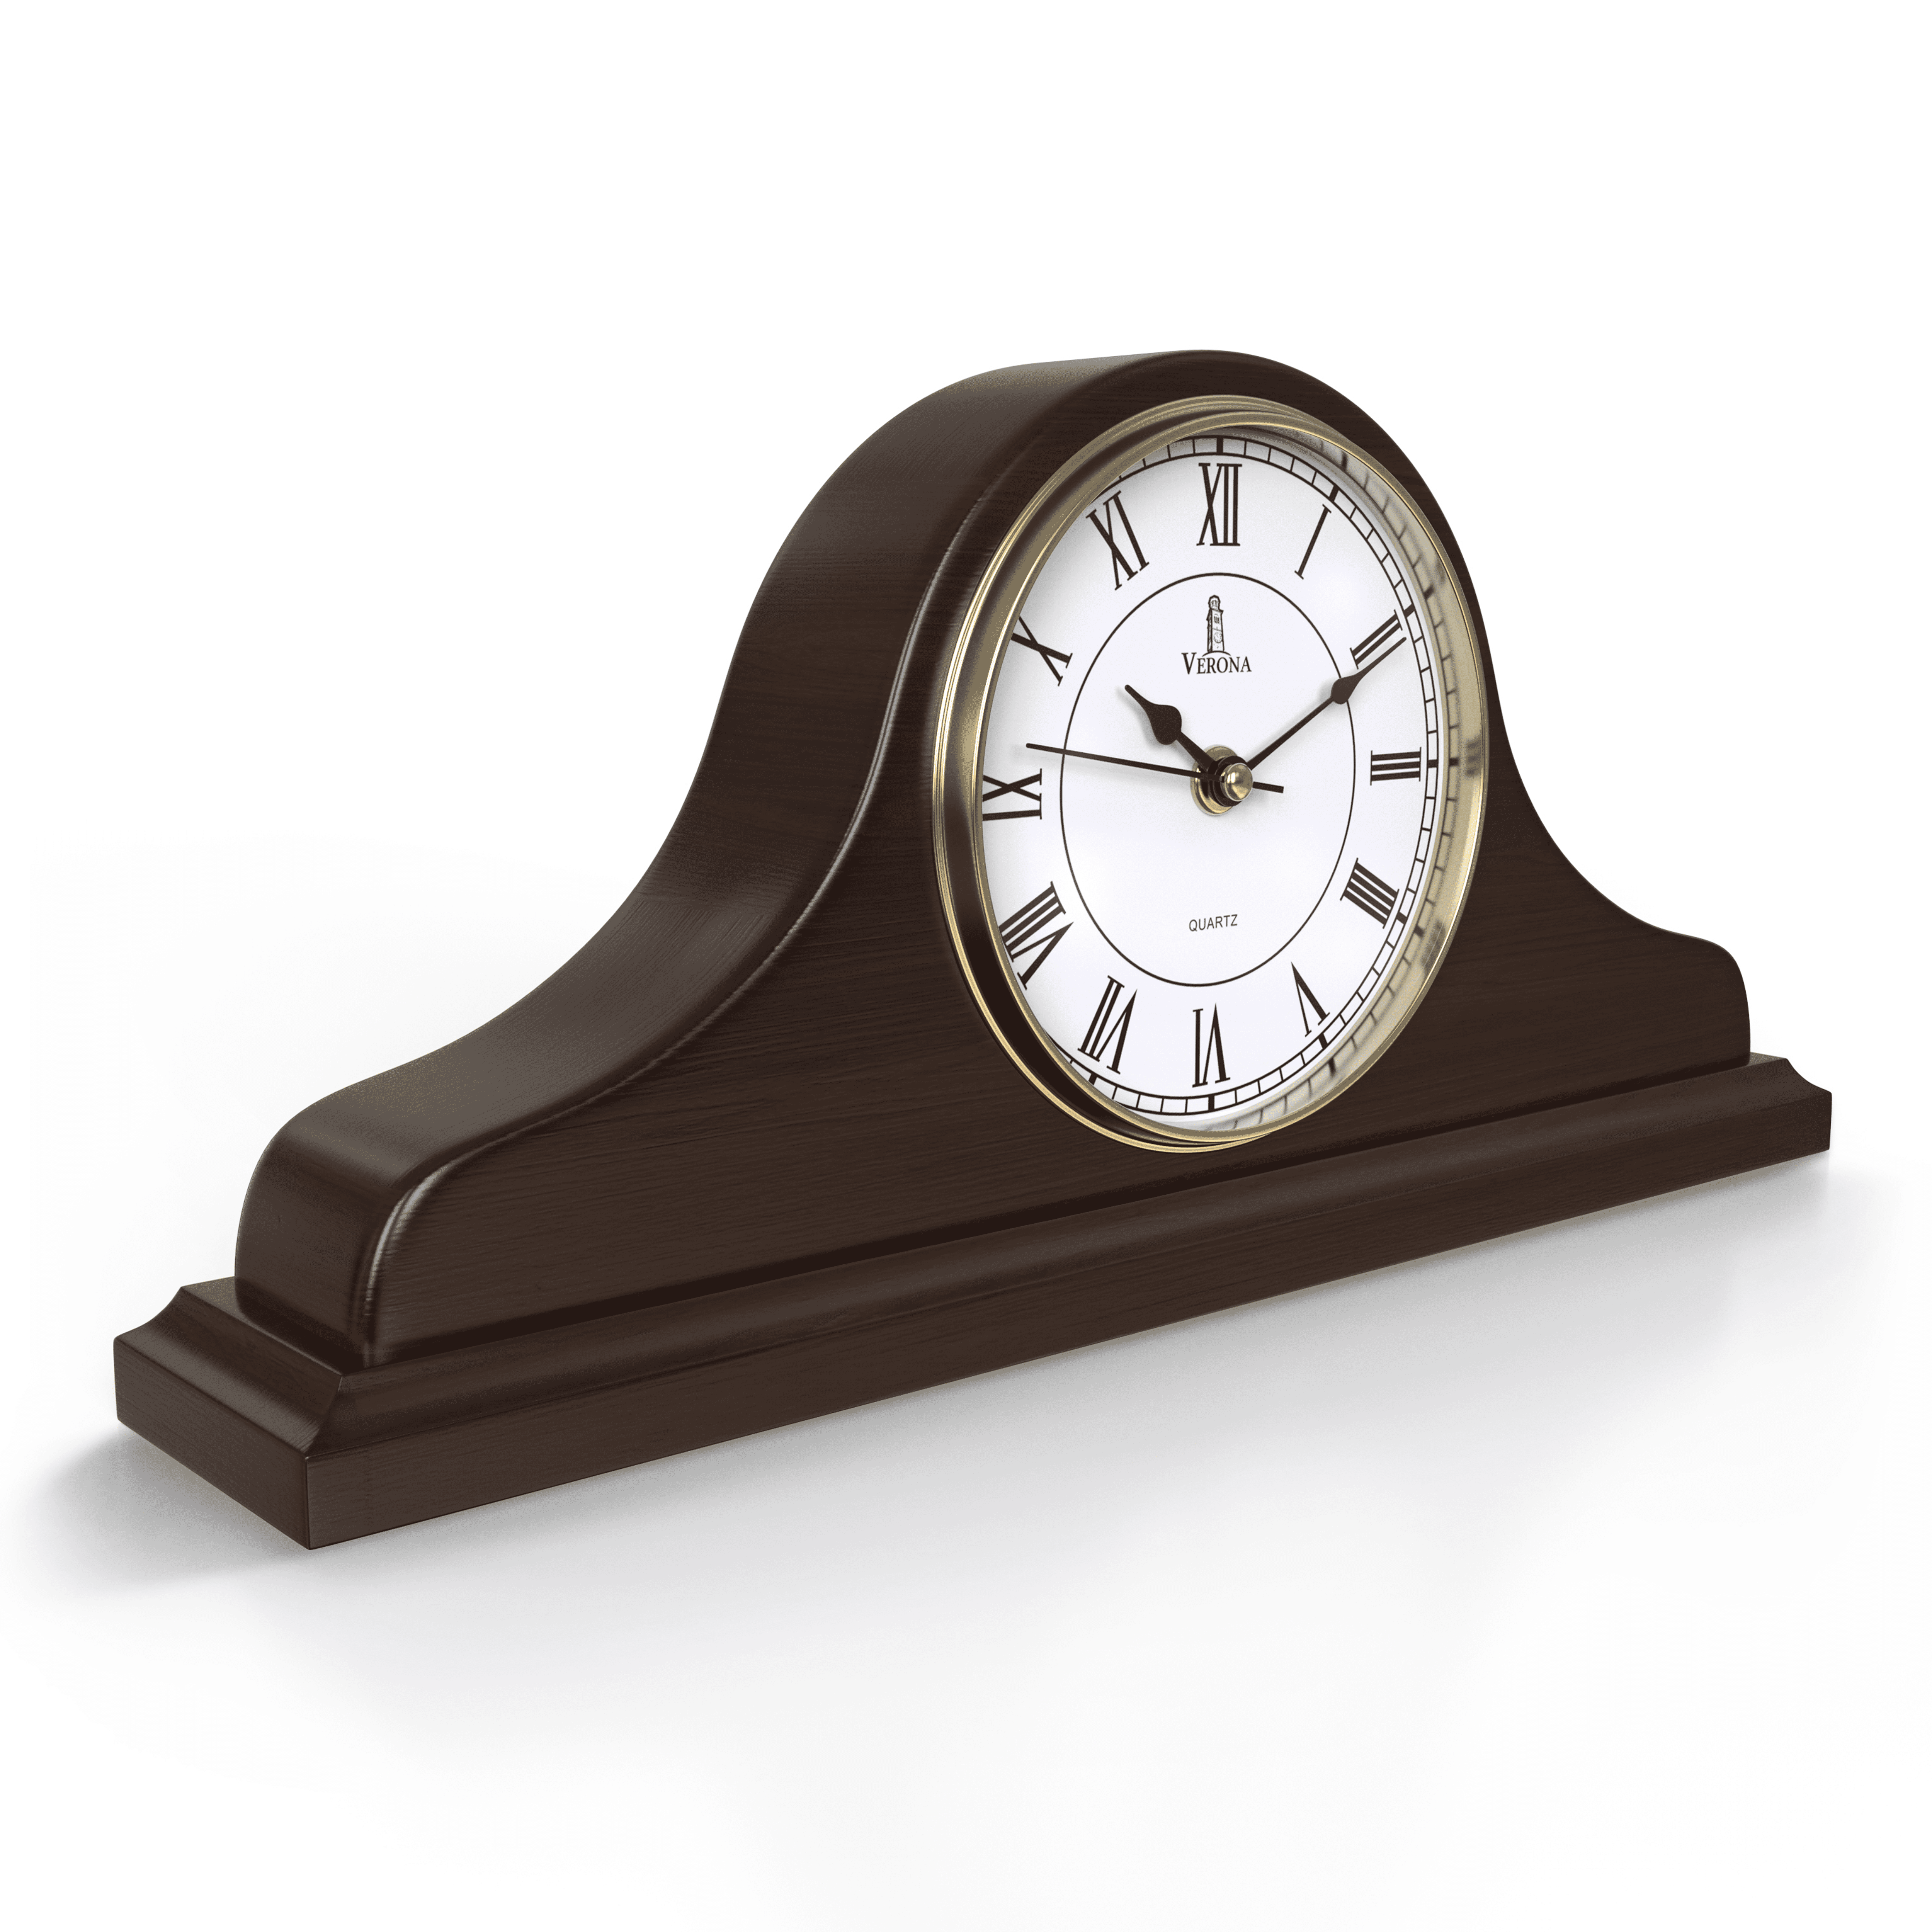 Retro Table Desktop 2 Dials Clock Decorative Glassses Design Mantel Clock 